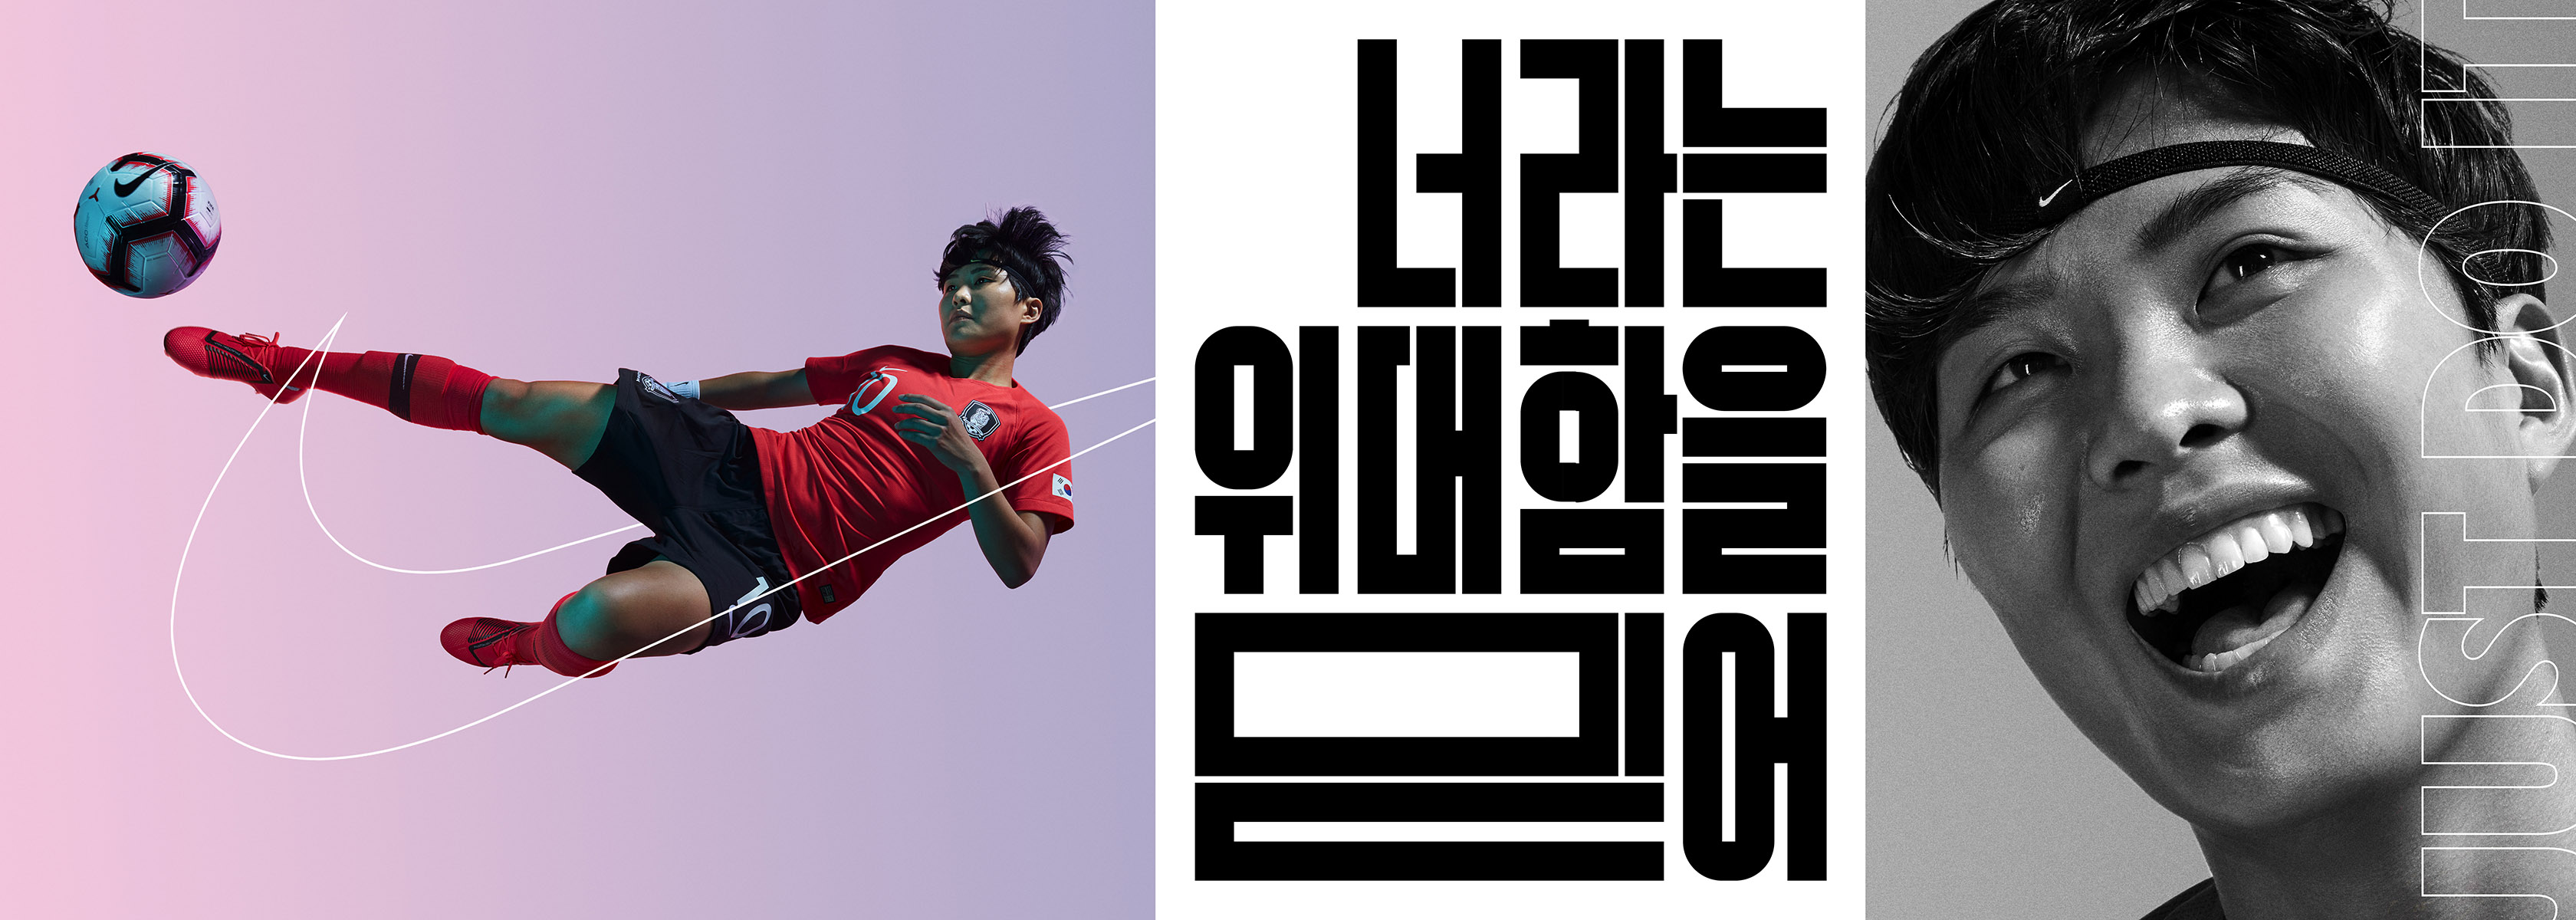 Nike Korea, Wieden & Kennedy Tokyo